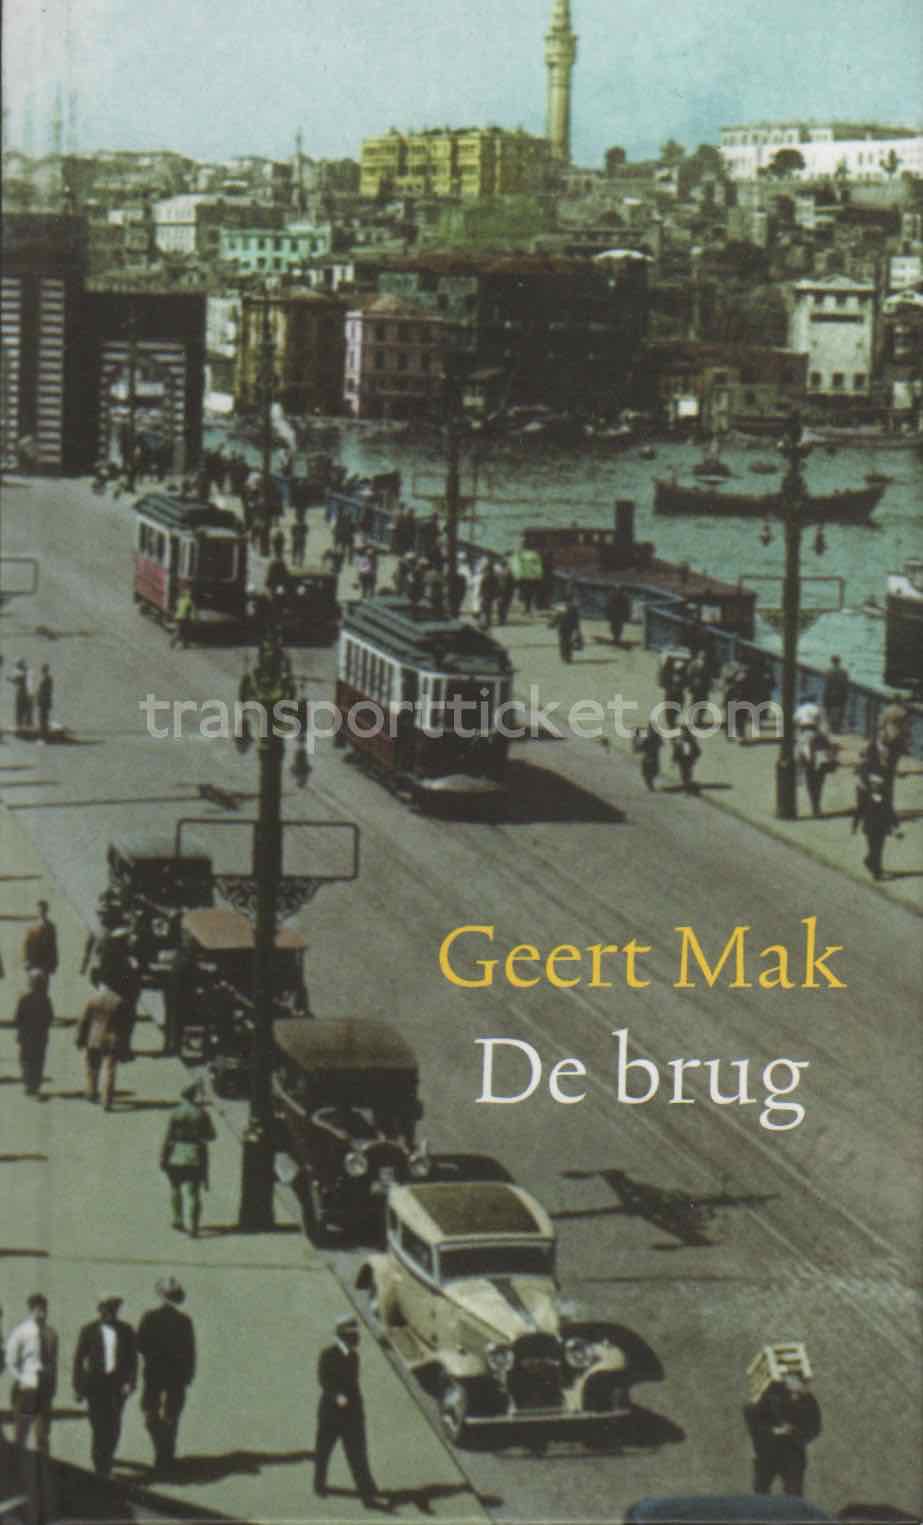 Geert Mak - De brug (2007)